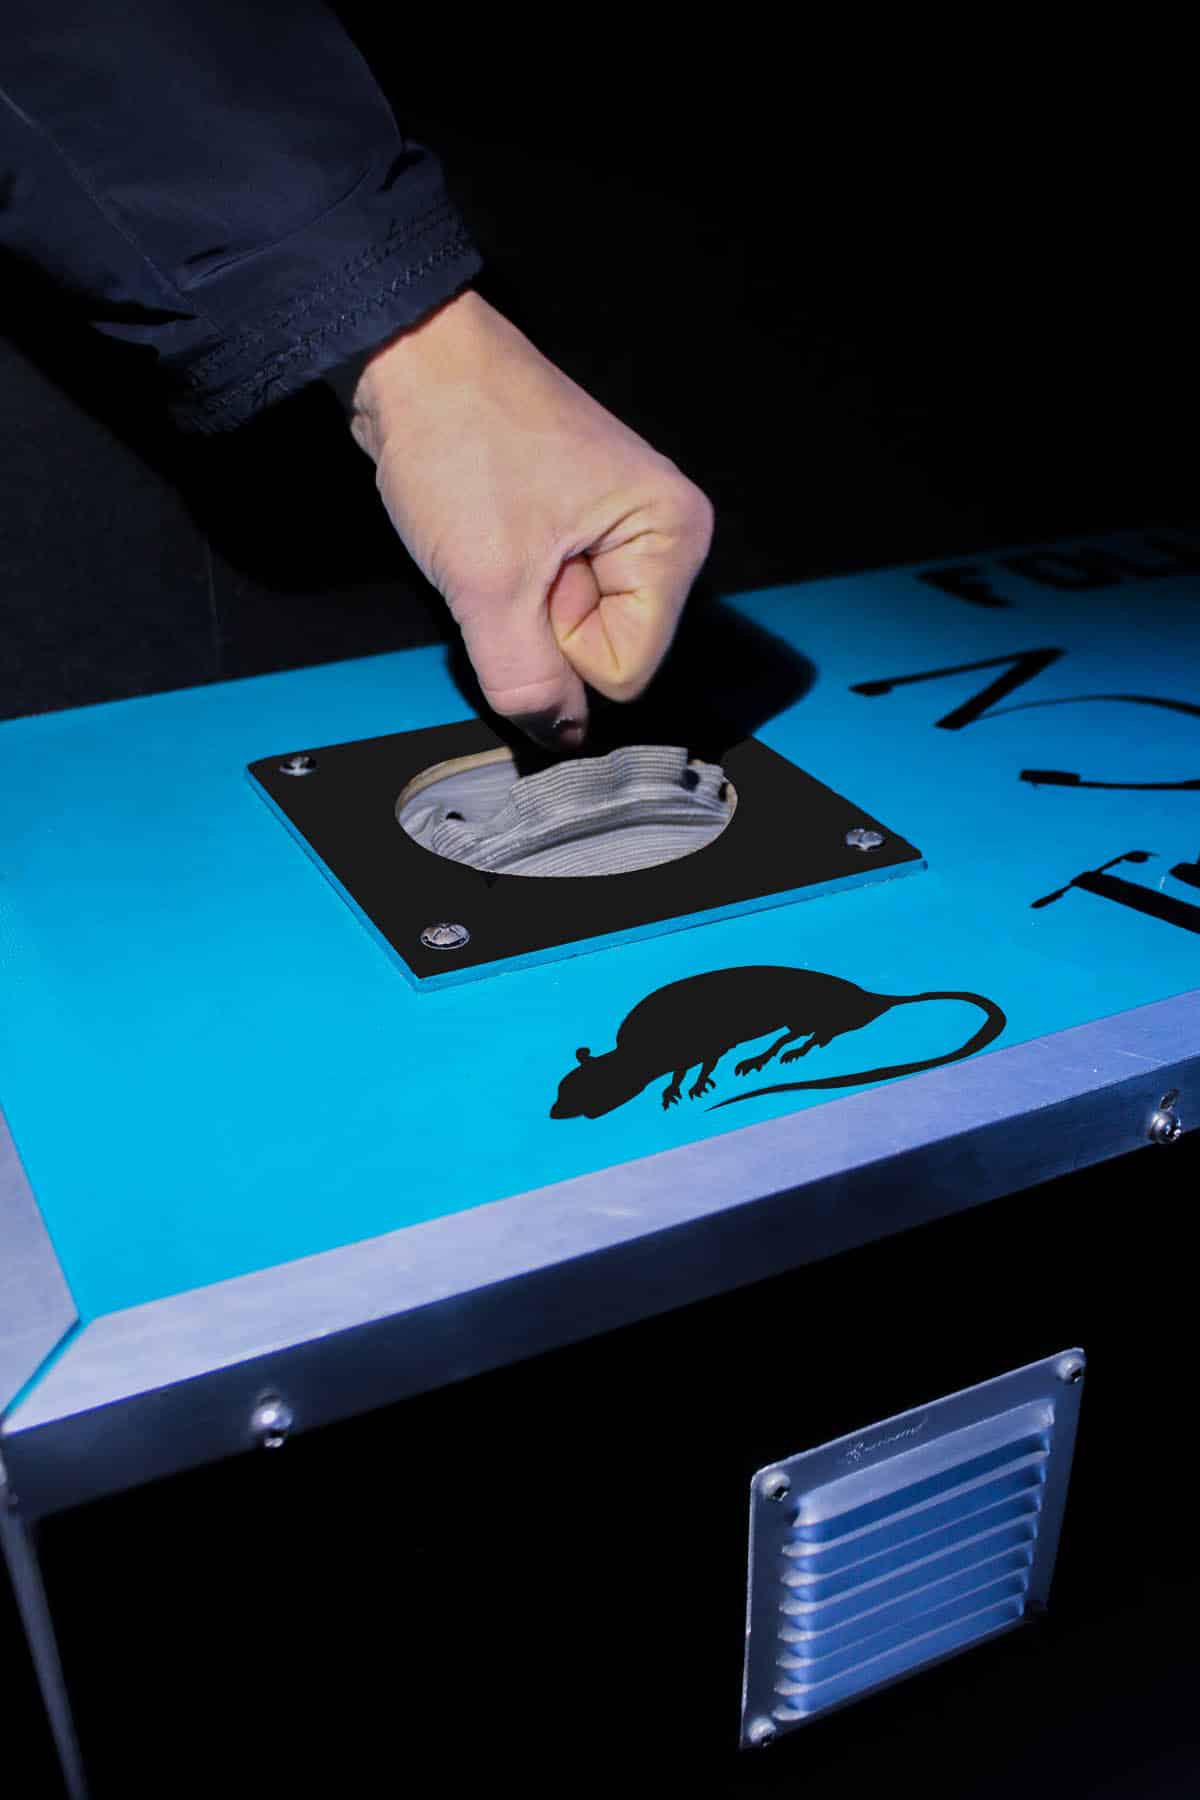 Une personne s'apprête à plonger sa main dans un boîte avec une signalisation "Danger rats"